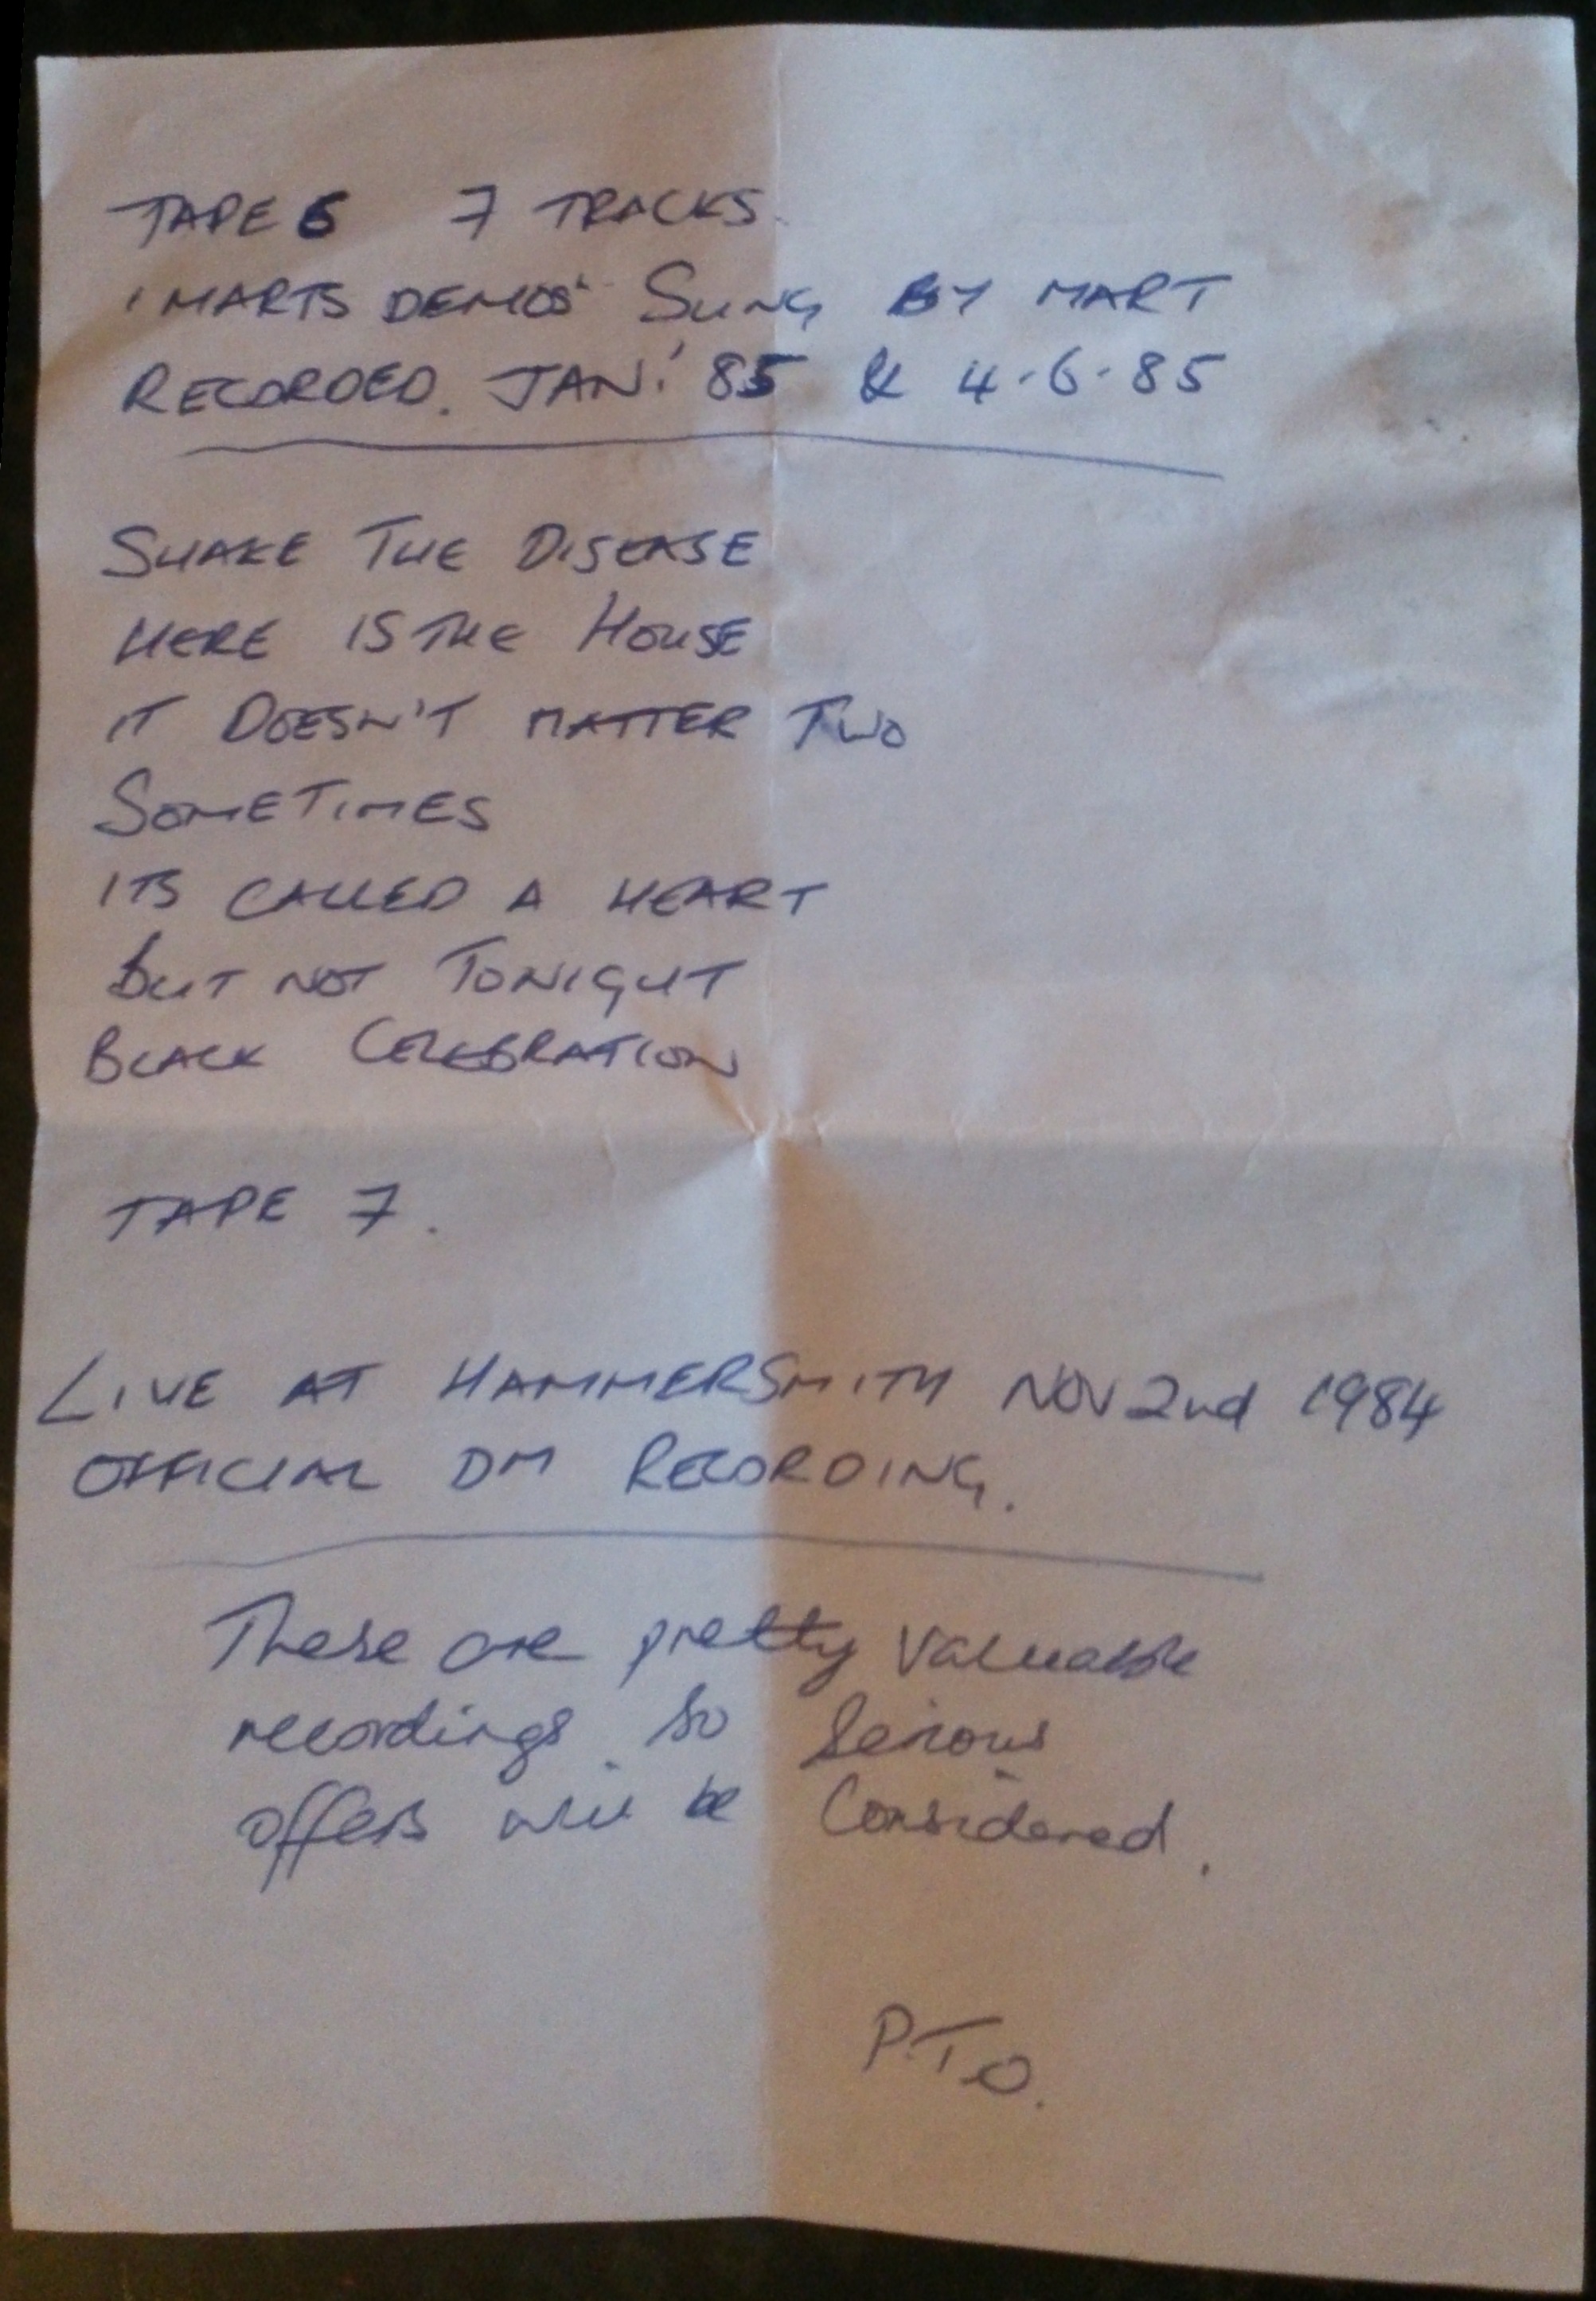 Handwritten info sheet for the Black Celebration demo tape.